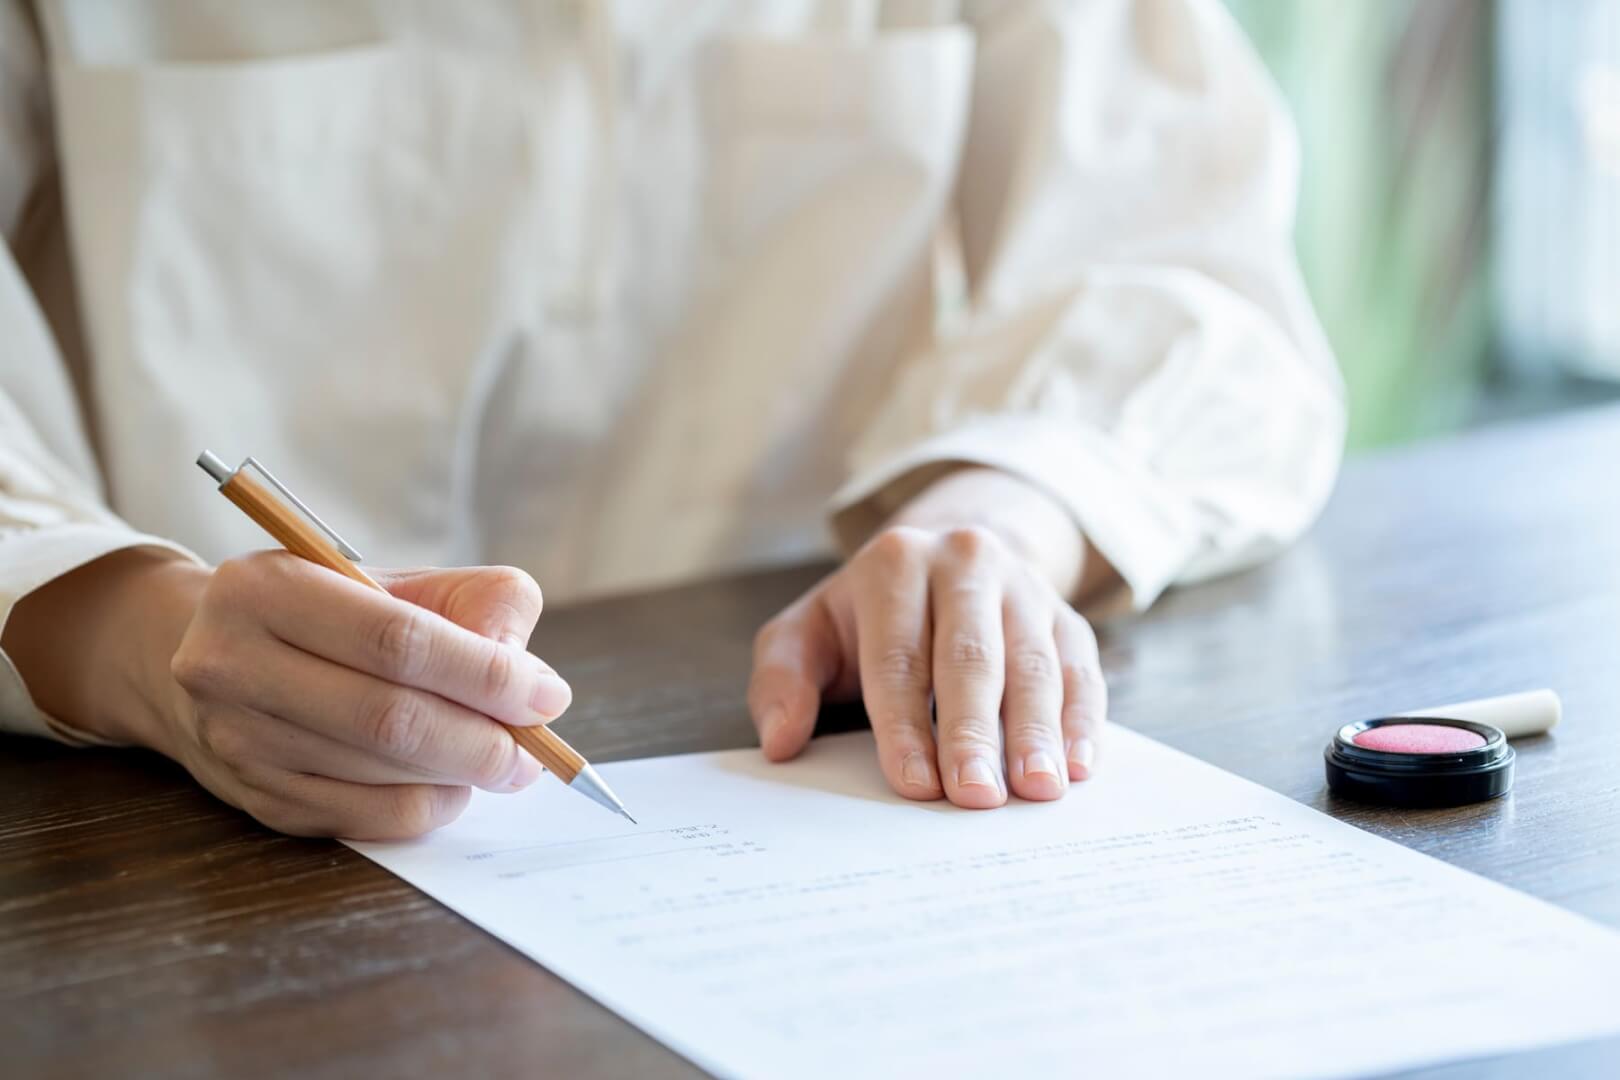 Un plano corto de una mujer firmando un documento de finiquito.